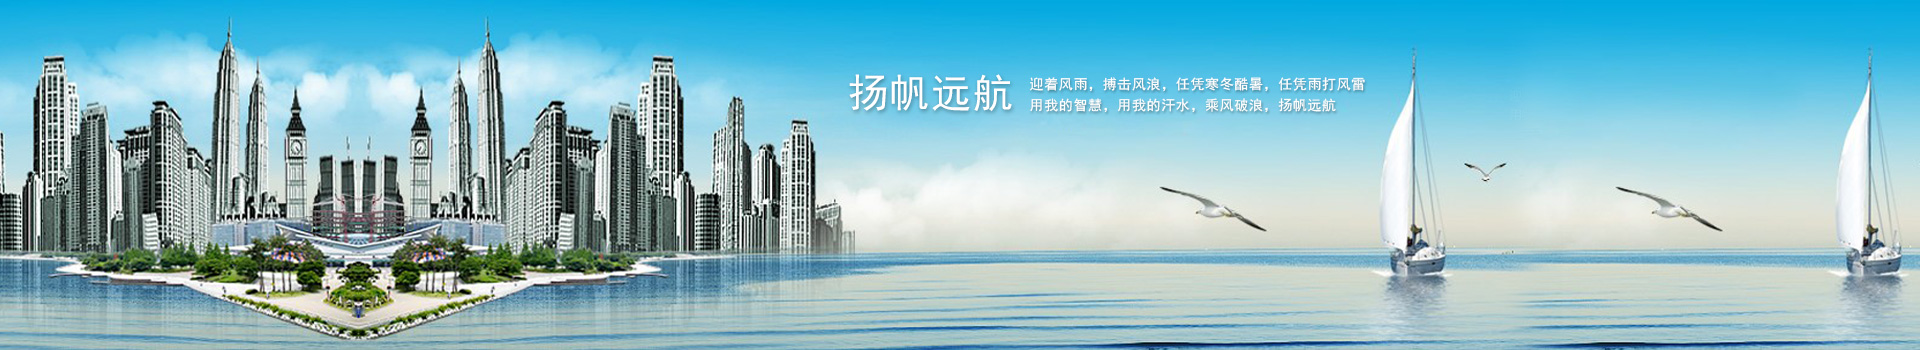 上海娱乐官网,上海娱乐平台,上海娱乐论坛,上海各区品茶工作室